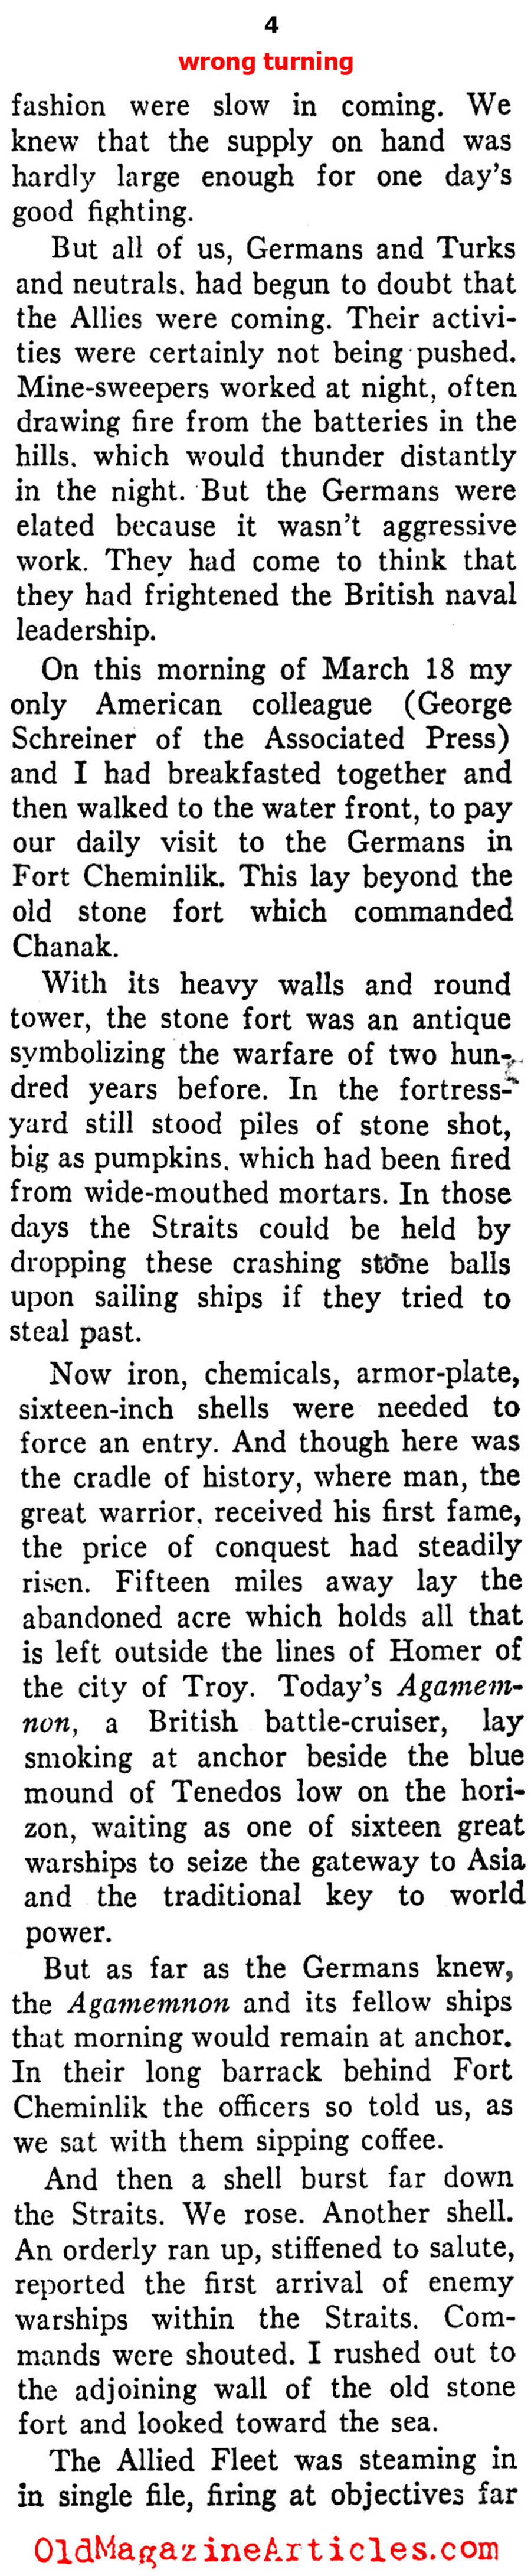 Wrong Turn at Gallipoli (Ken Magazine, 1938)